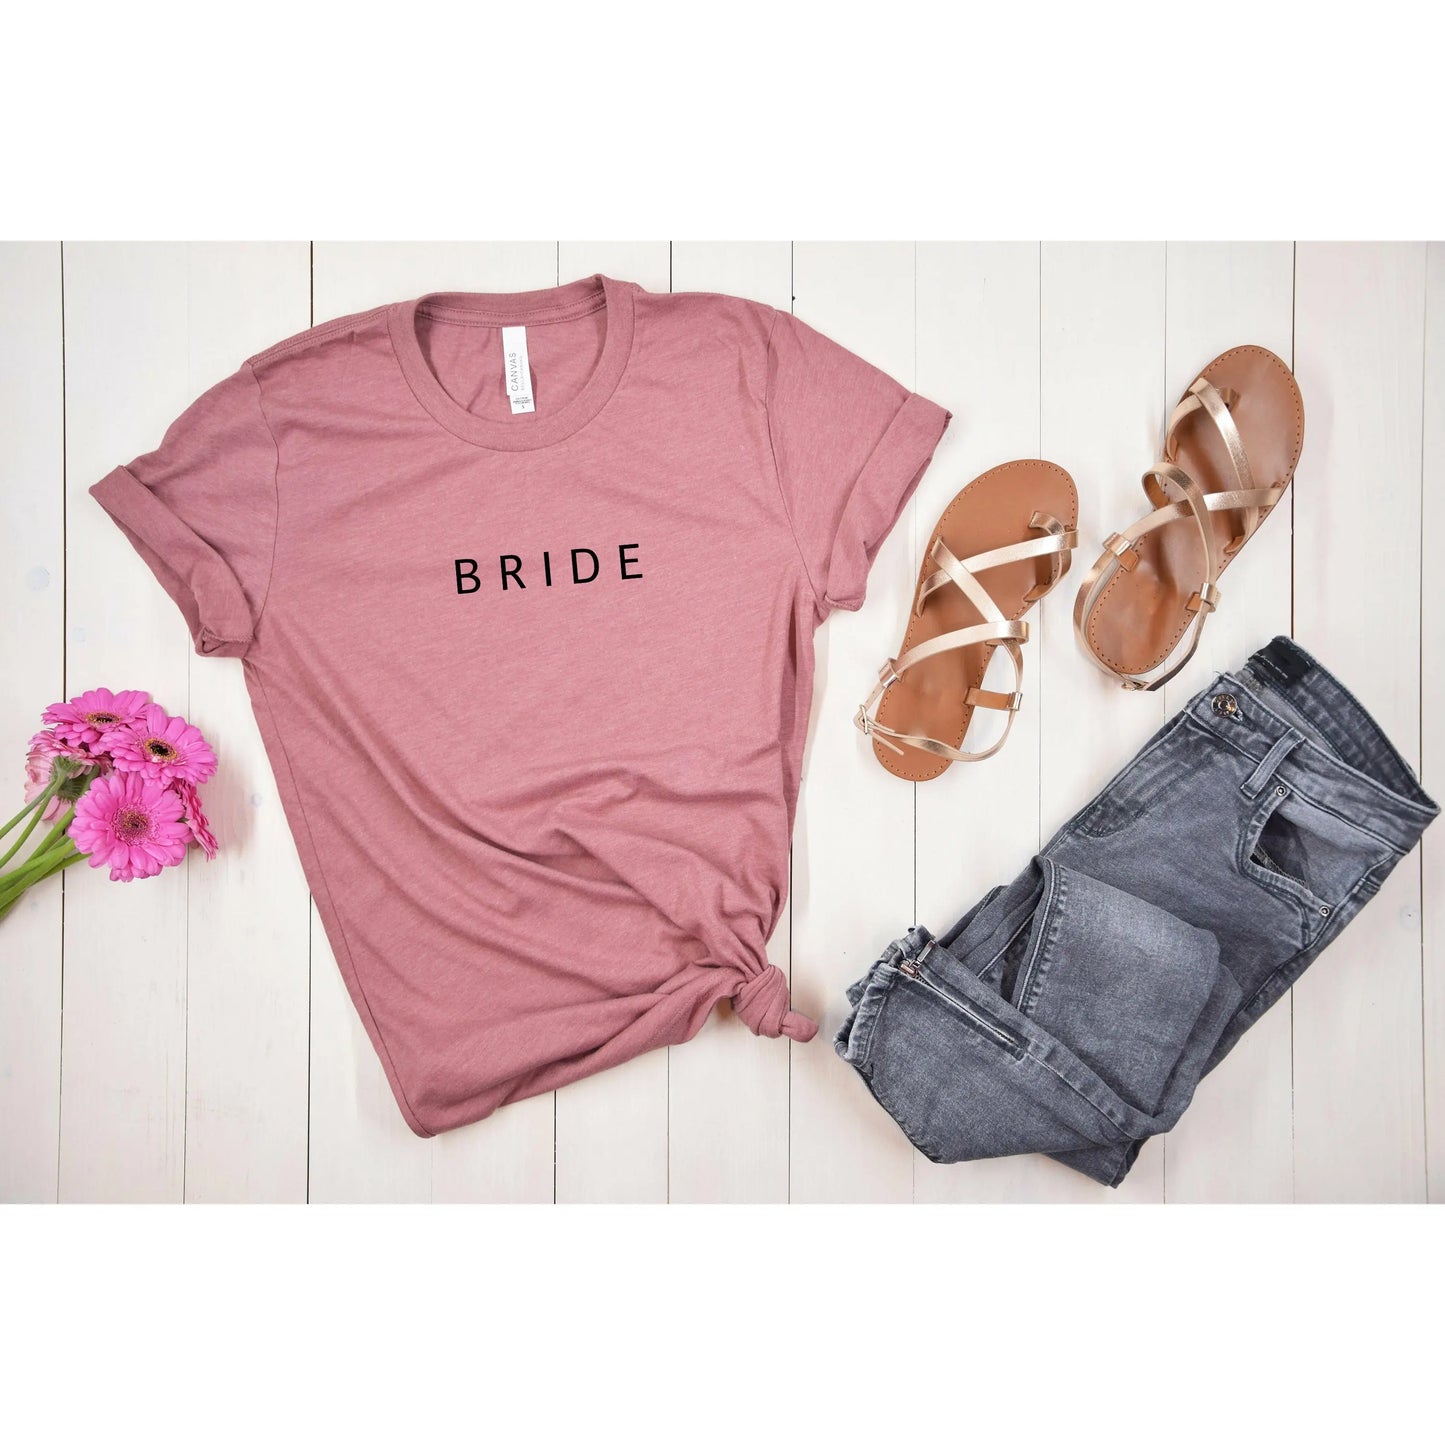 Bride Simple Text Tshirt | Bridesmaid Getting Ready Outfit, Bridesmaid Shirts, Bridesmaid Gift, Bridal Party Shirt Printify